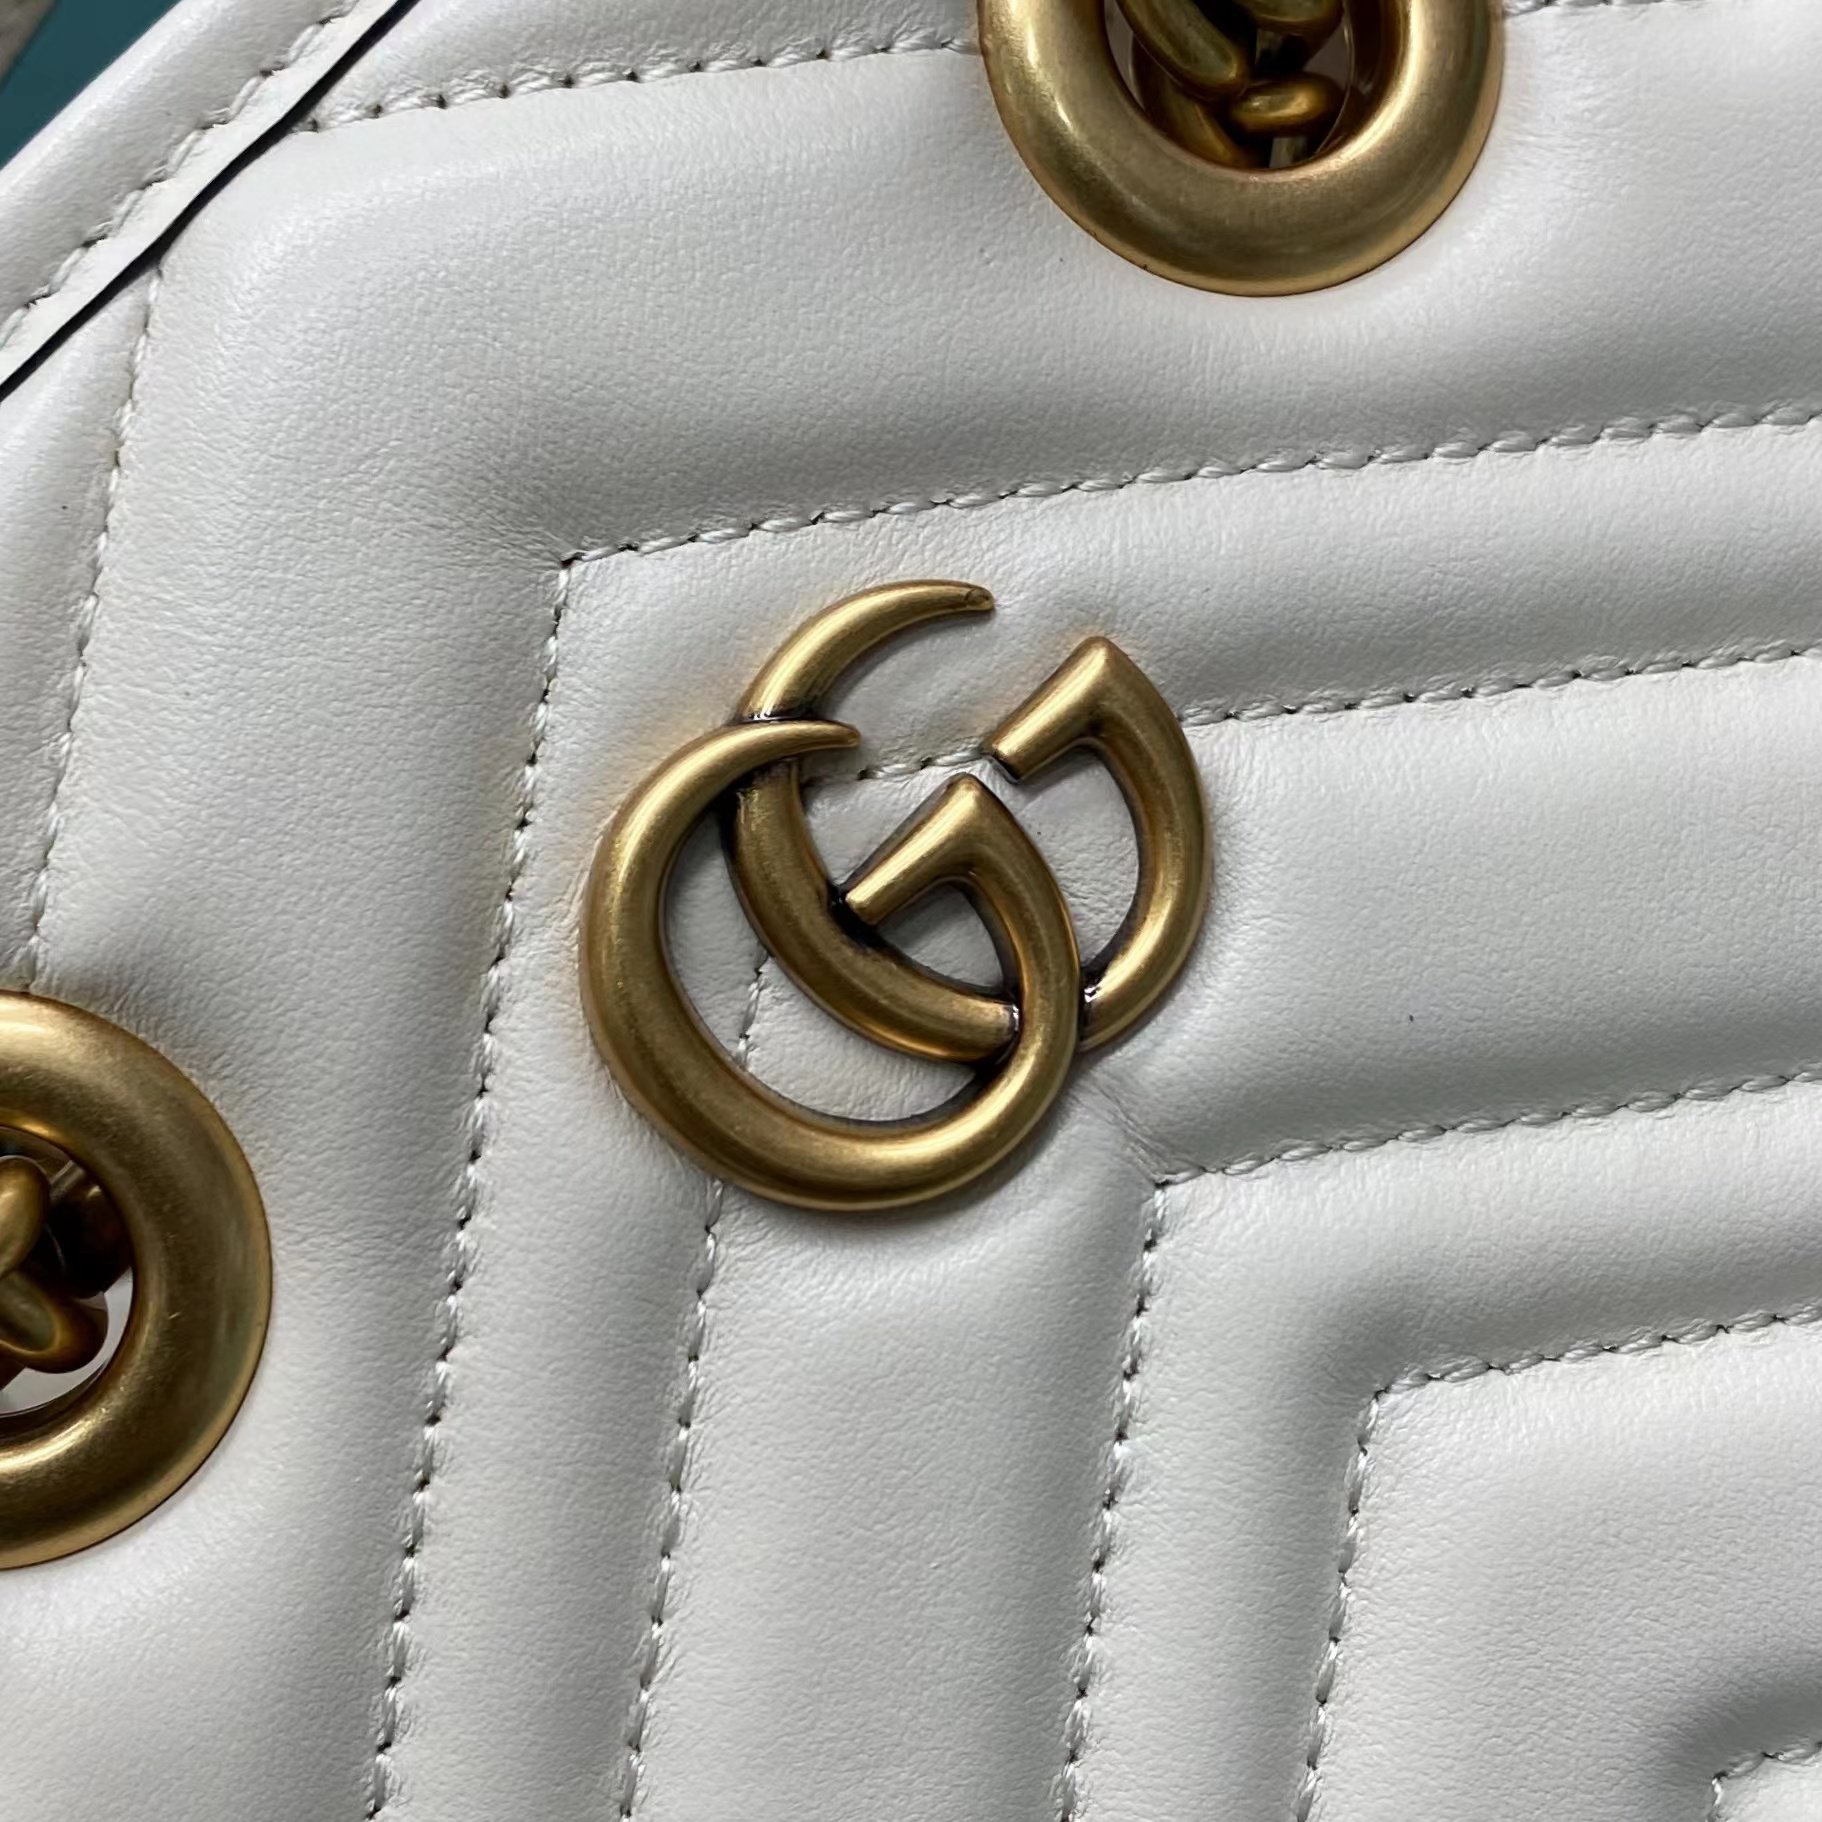 【P1170】广州包包批发 Gucci Marmont竖款迷你手提包单肩斜挎包 白色